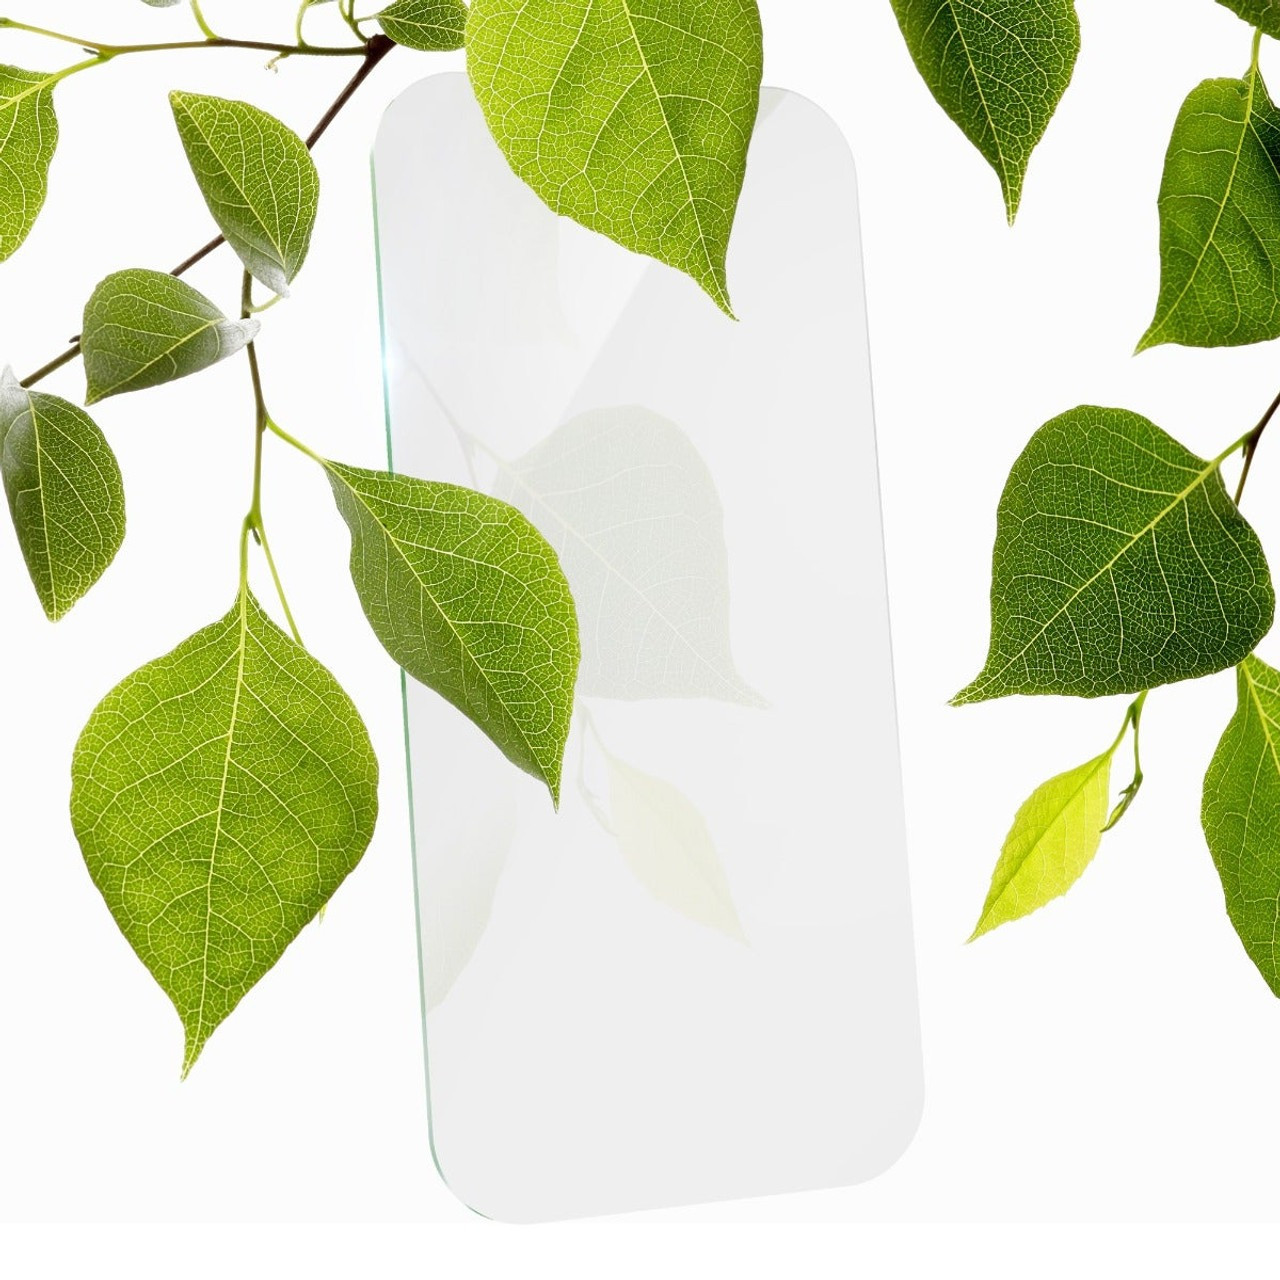 ZAGG Protector de pantalla InvisibleShield Glass Elite Privacy 360 para el iPhone  15 Pro Max